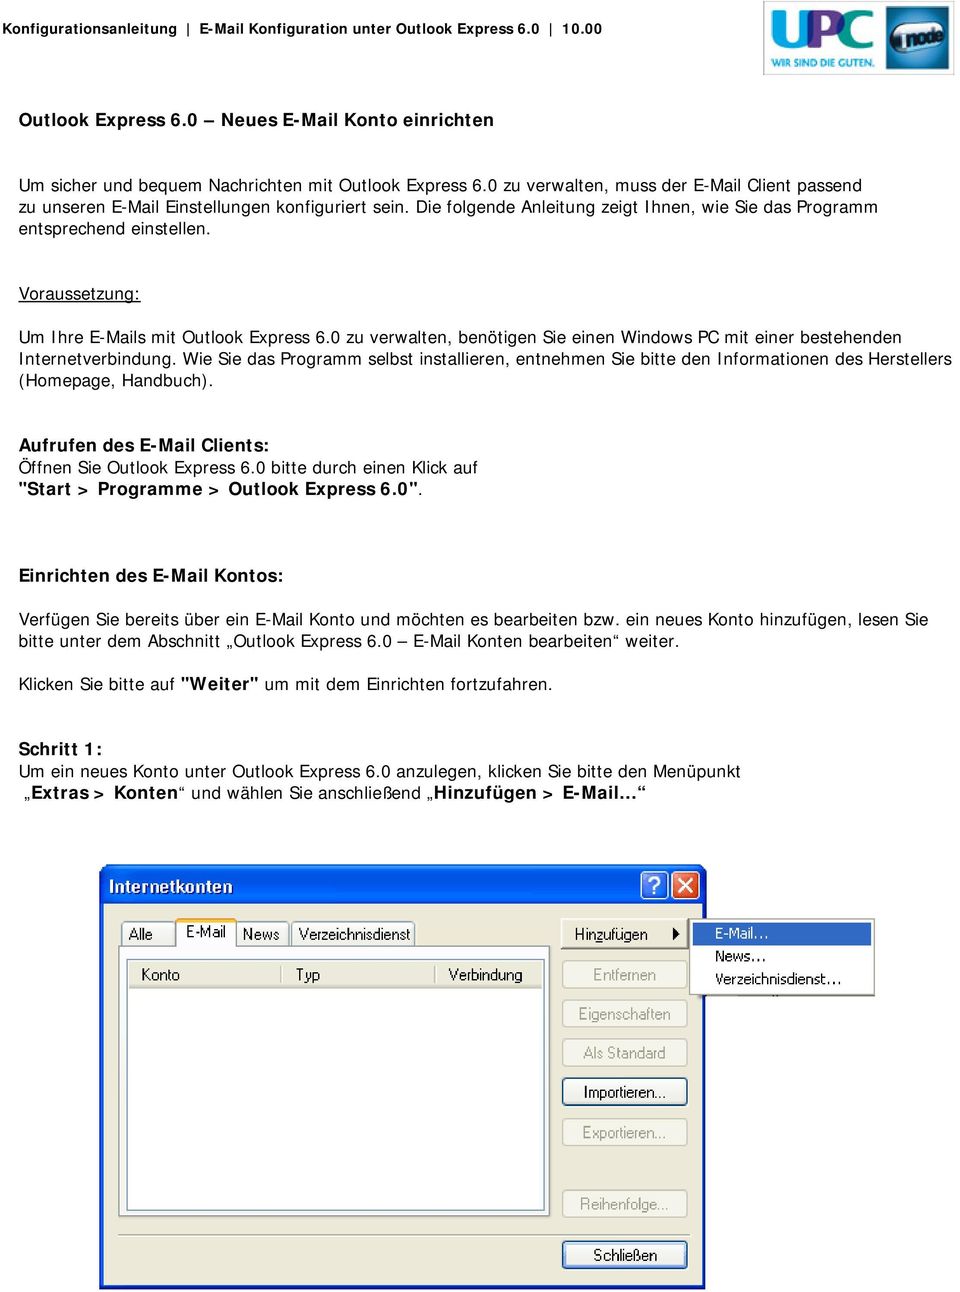 Voraussetzung: Um Ihre E-Mails mit Outlook Express 6.0 zu verwalten, benötigen Sie einen Windows PC mit einer bestehenden Internetverbindung.